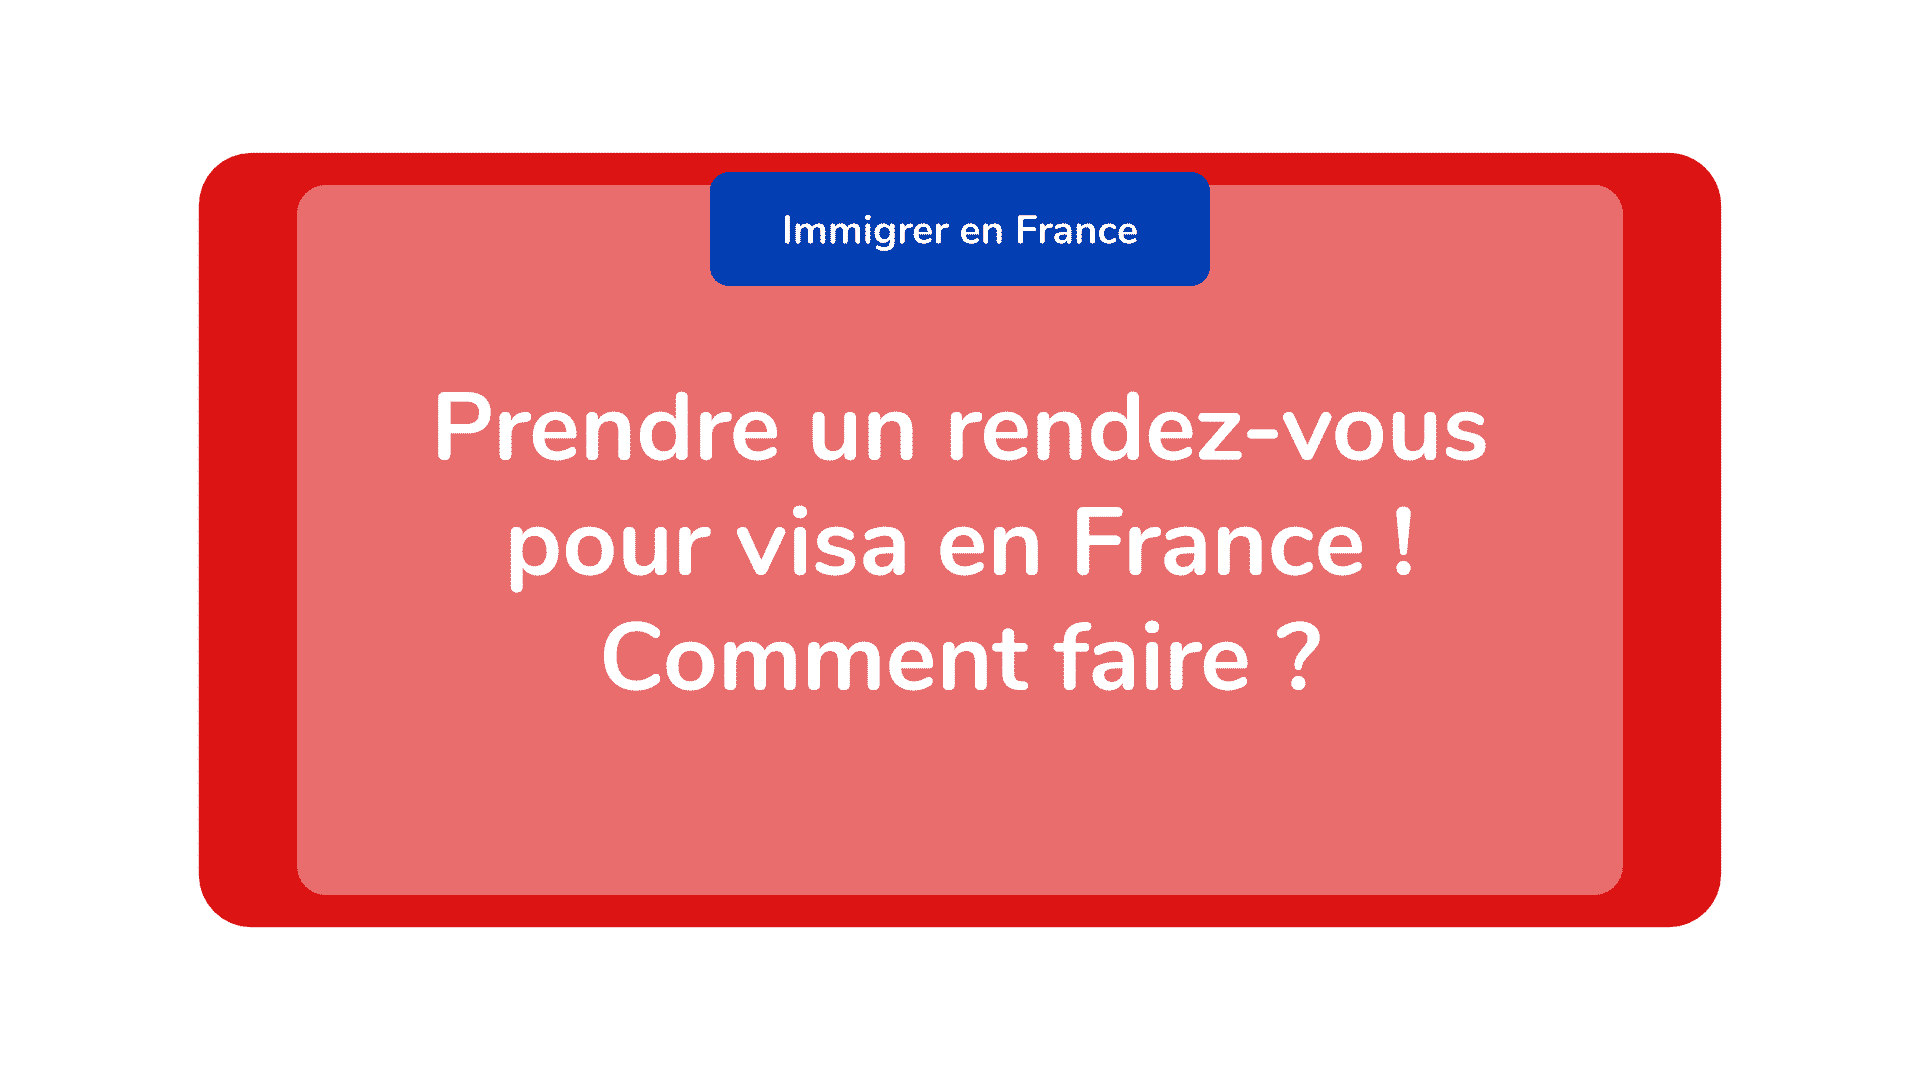 Prendre un rendez-vous pour visa en France ! Comment faire